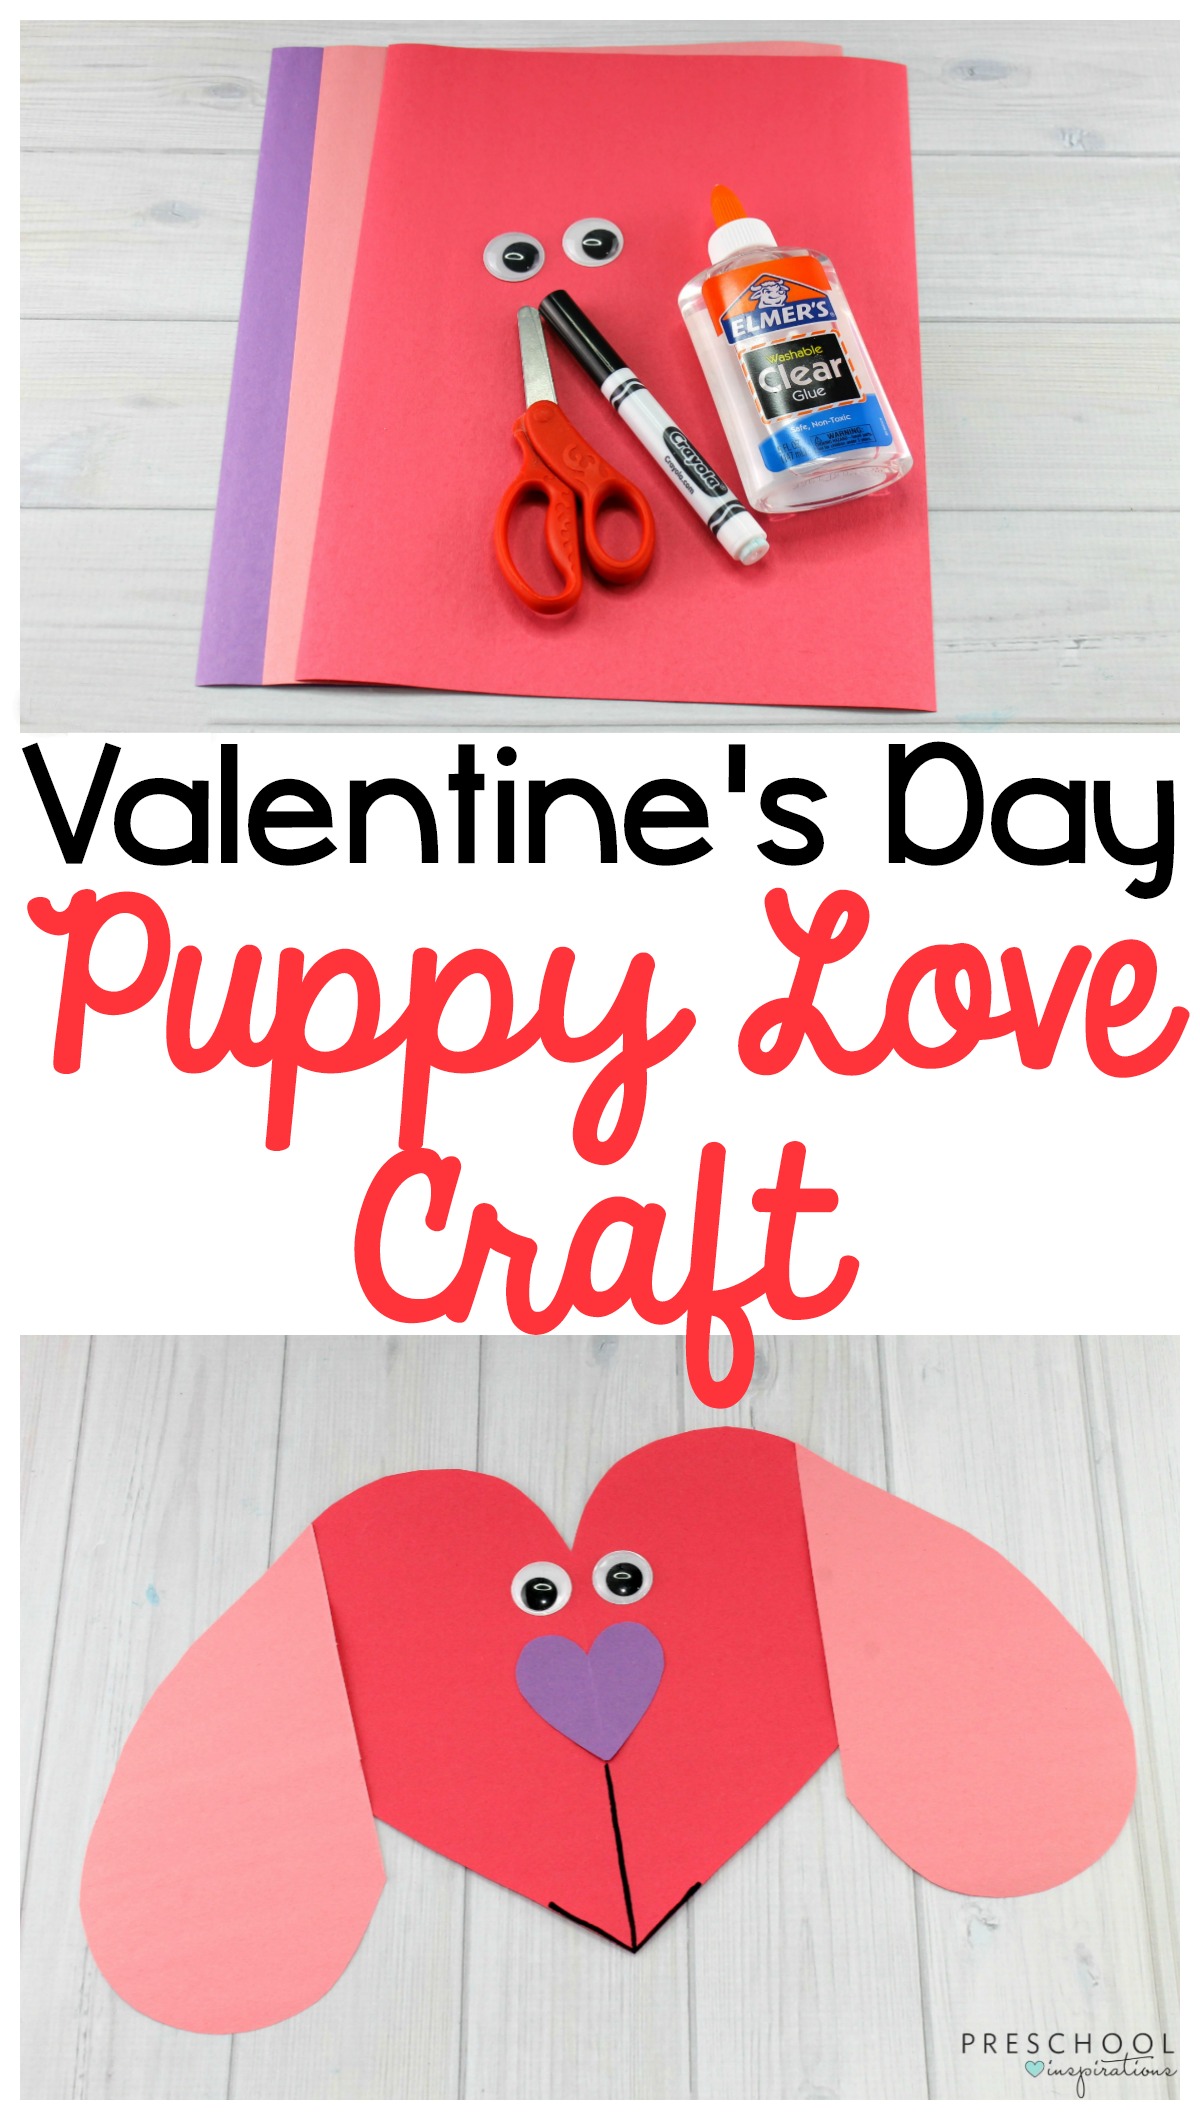 Puppy Love Preschool Heart Craft to Make this Valentine's Day